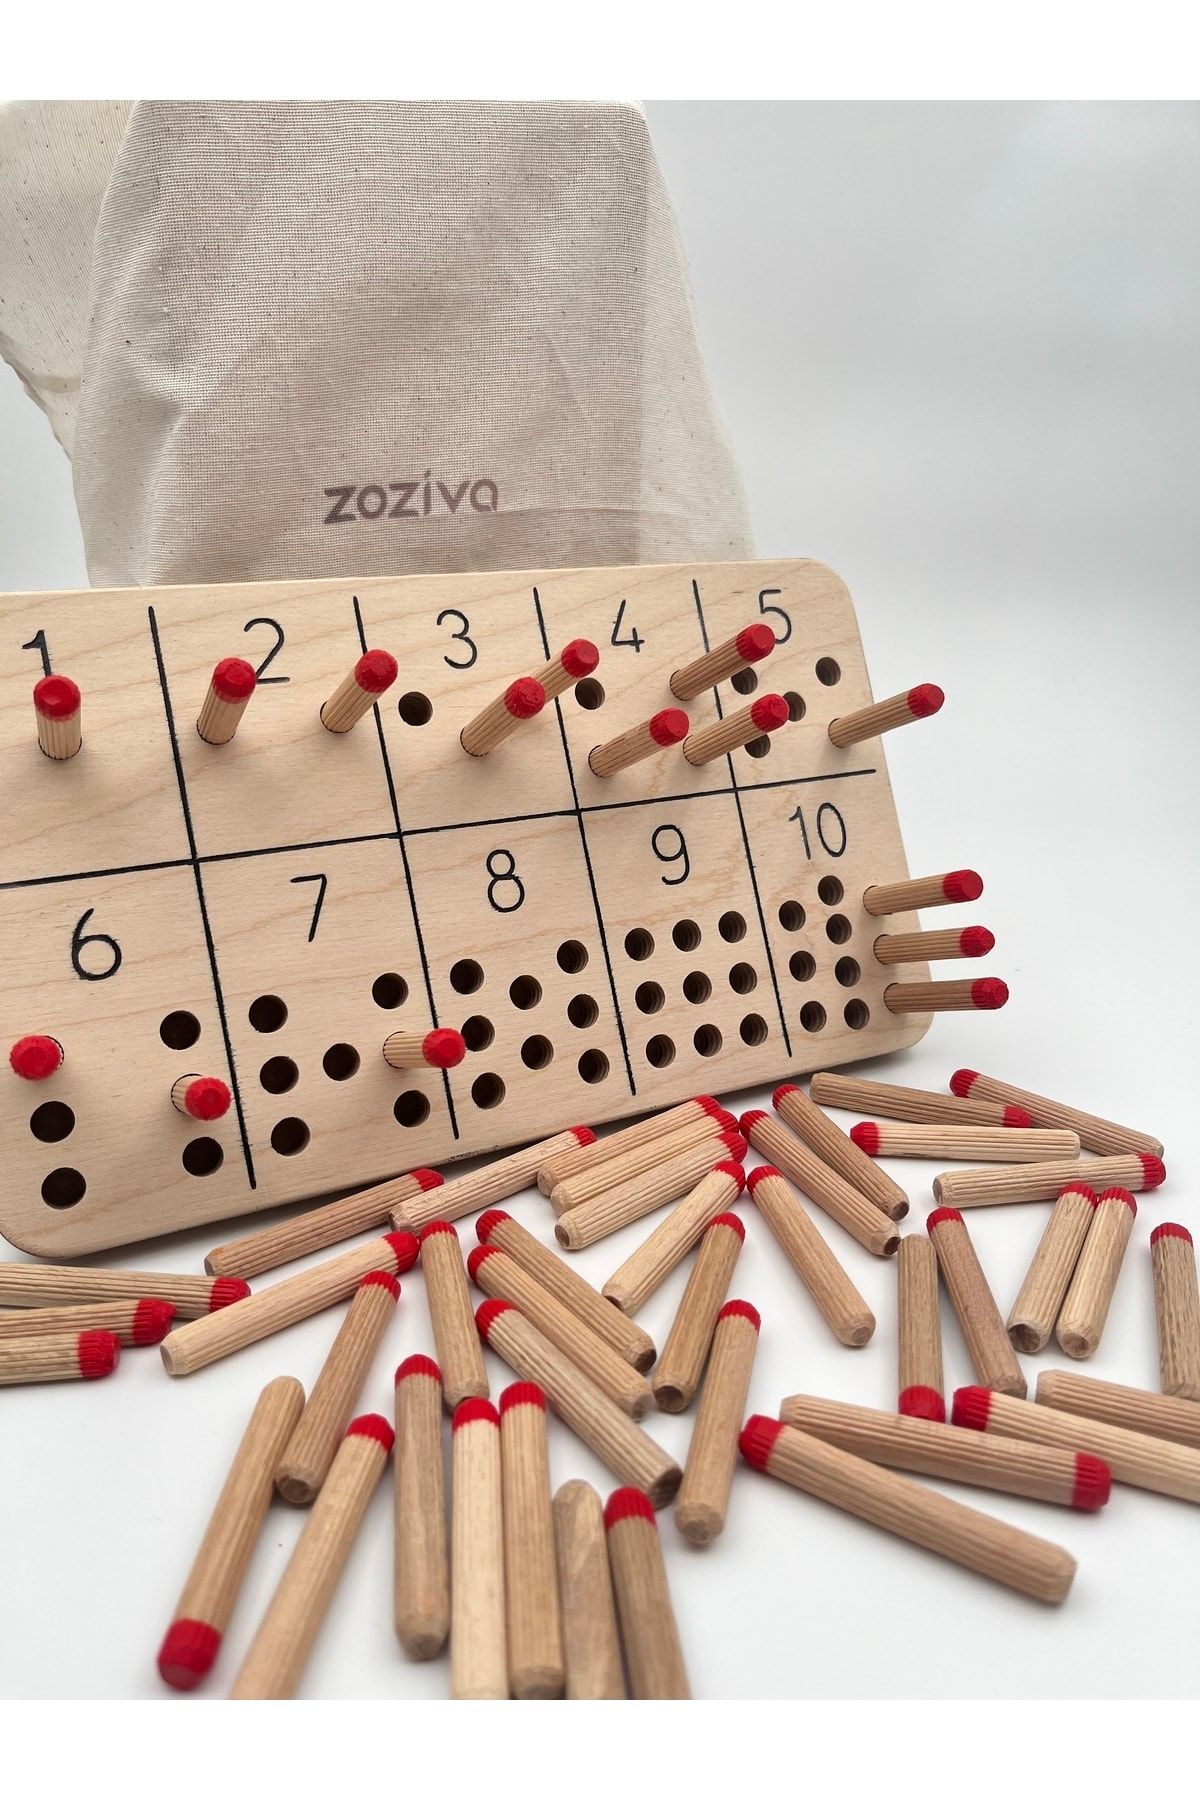 zoziva Montessori Çubuklar Ile Sayı Öğrenme Oyuncağı, Sayma Becerisi Kazandırma Eğitici Ahşap Materyali